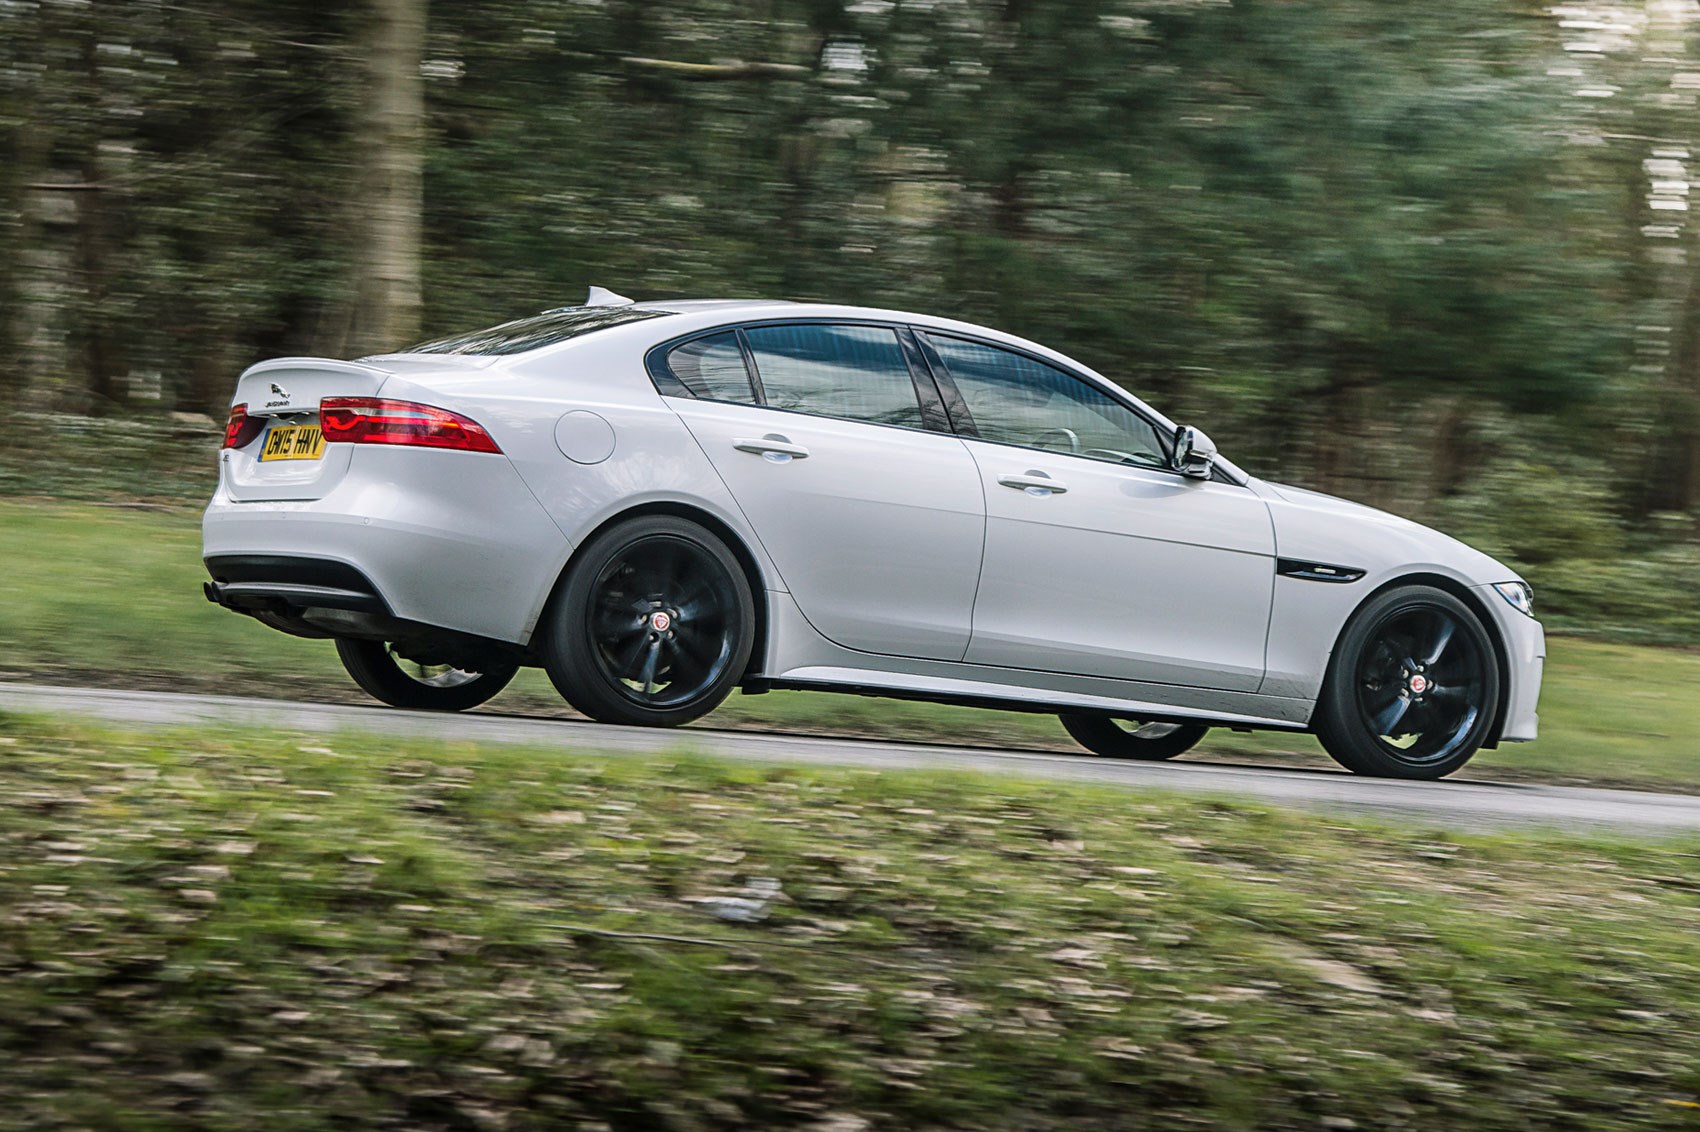 Jaguar XE R-Sport 2.0 (2017) long-term test review